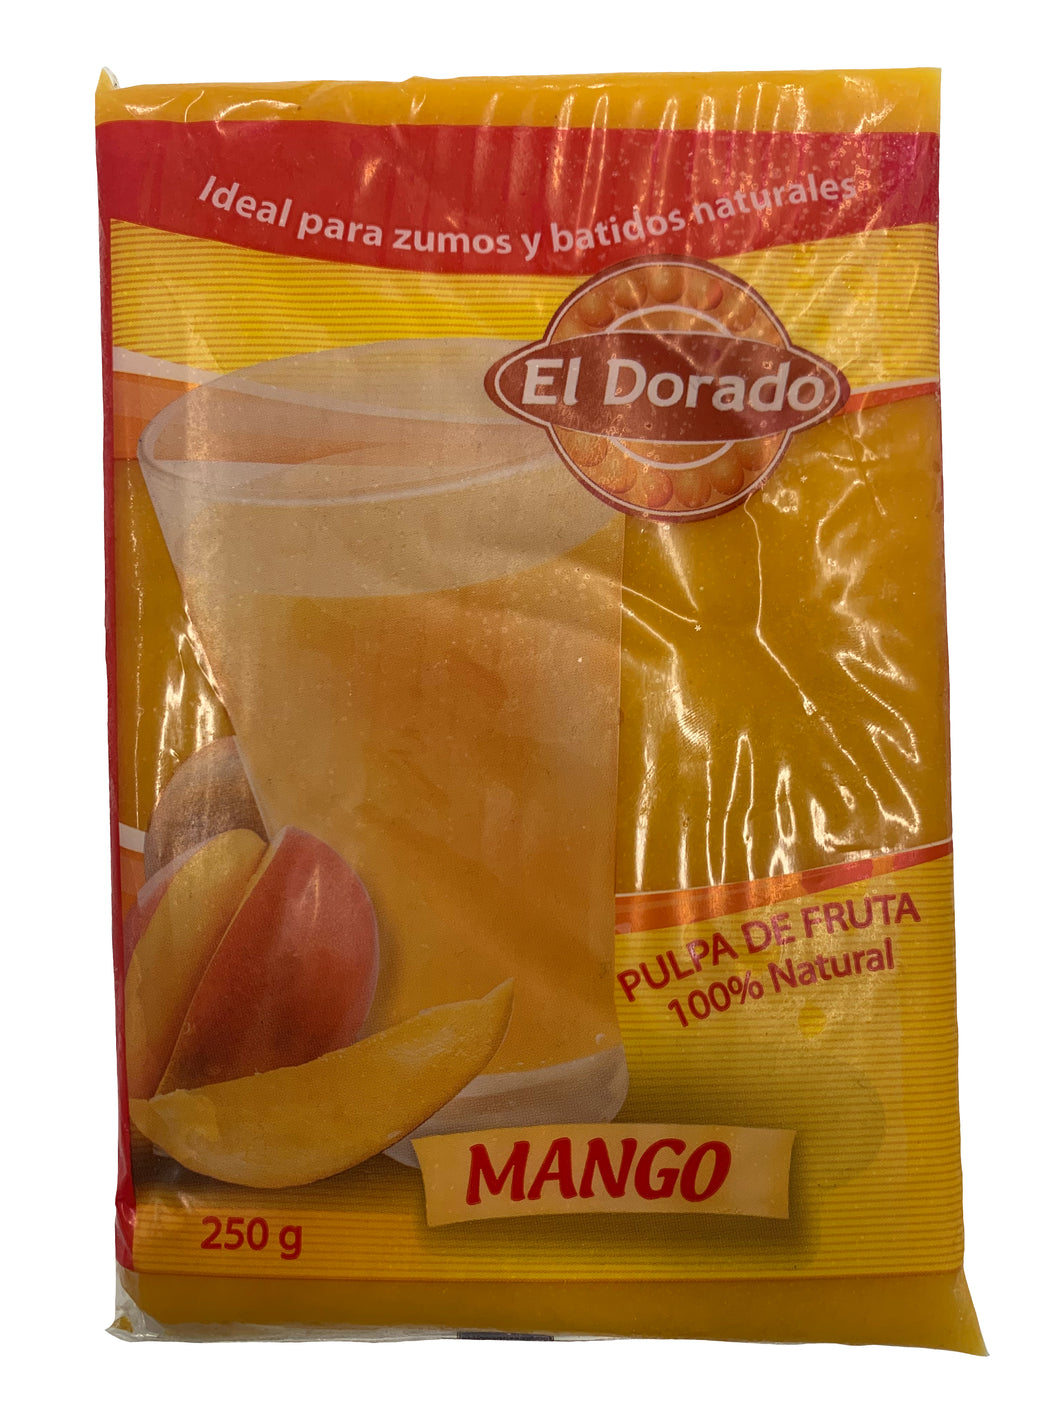 [FROZEN] El Dorado Mango Fruit Pulp - Pulpa de Mango 250g